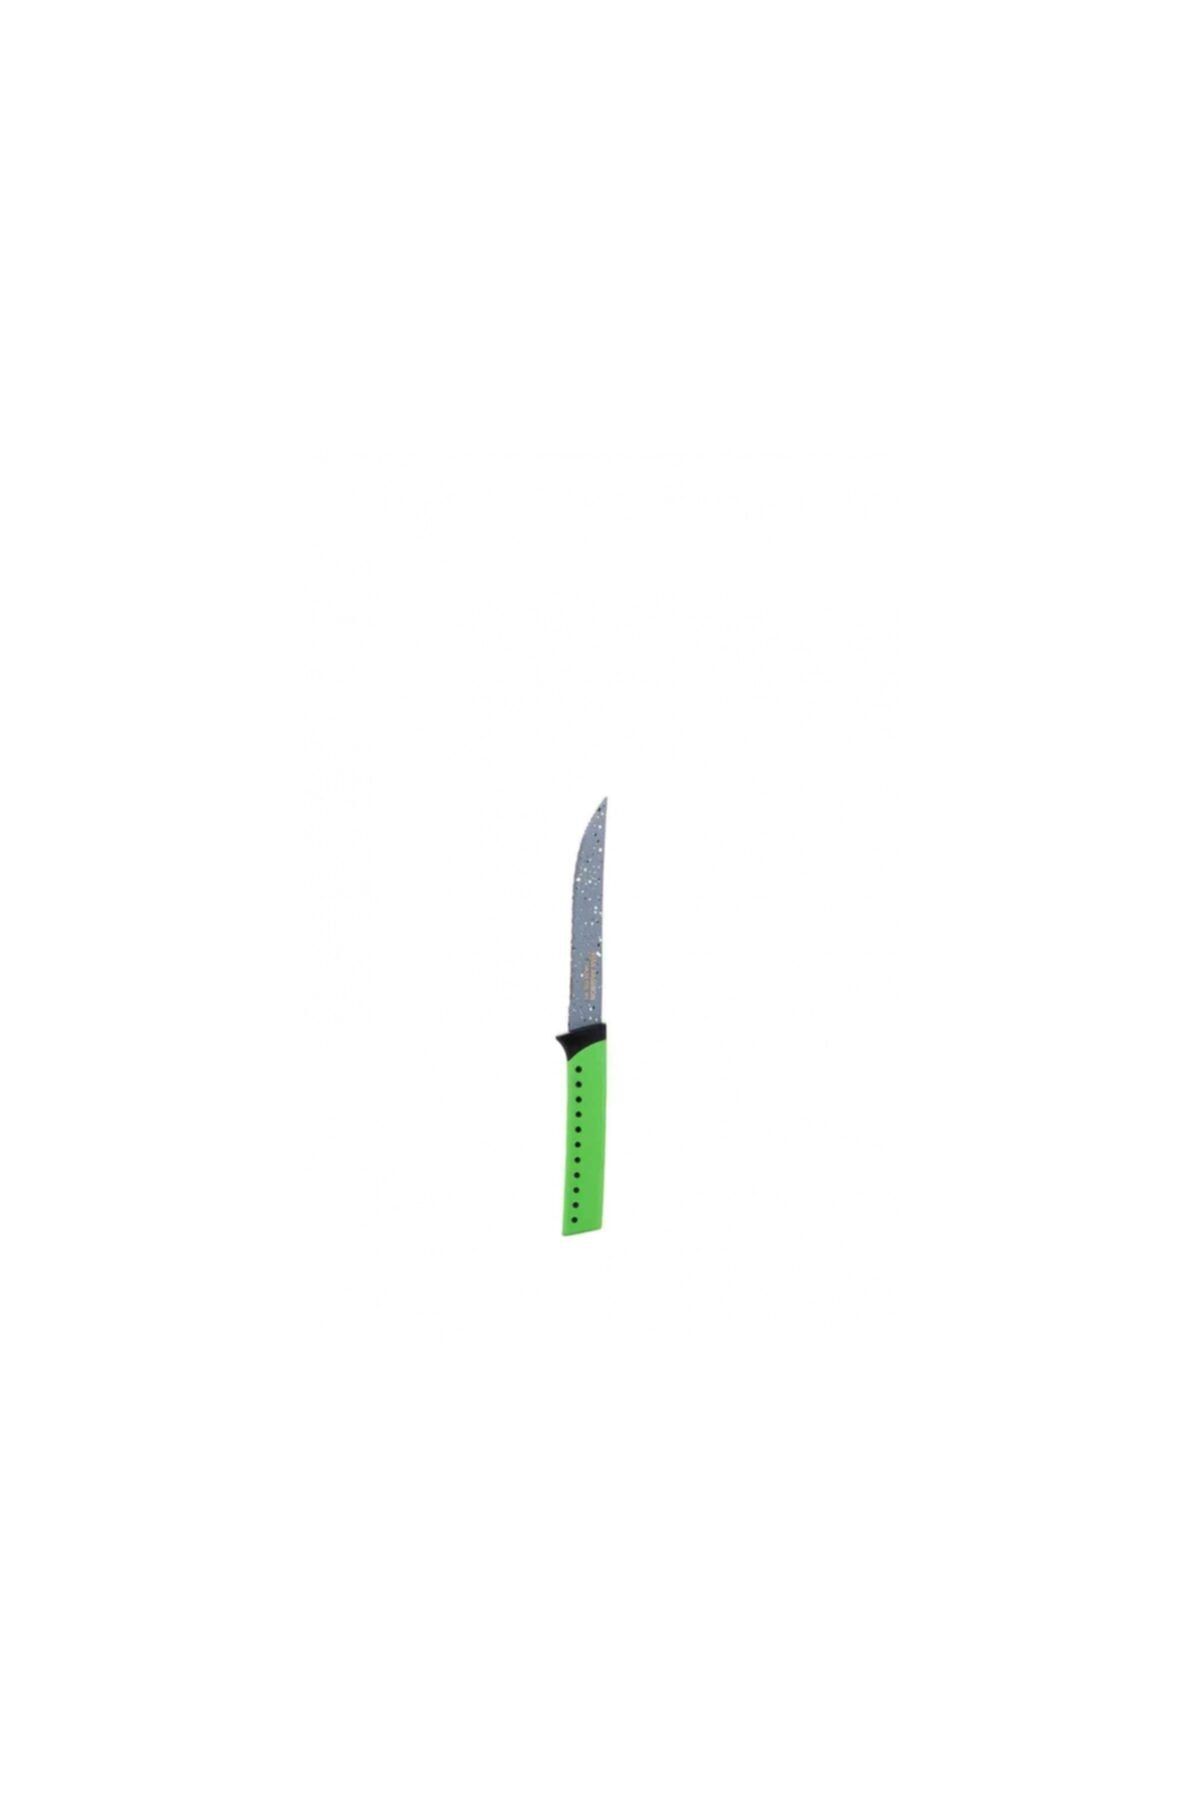 Taç 21 Cm Sebze Bıçağı Yeşil